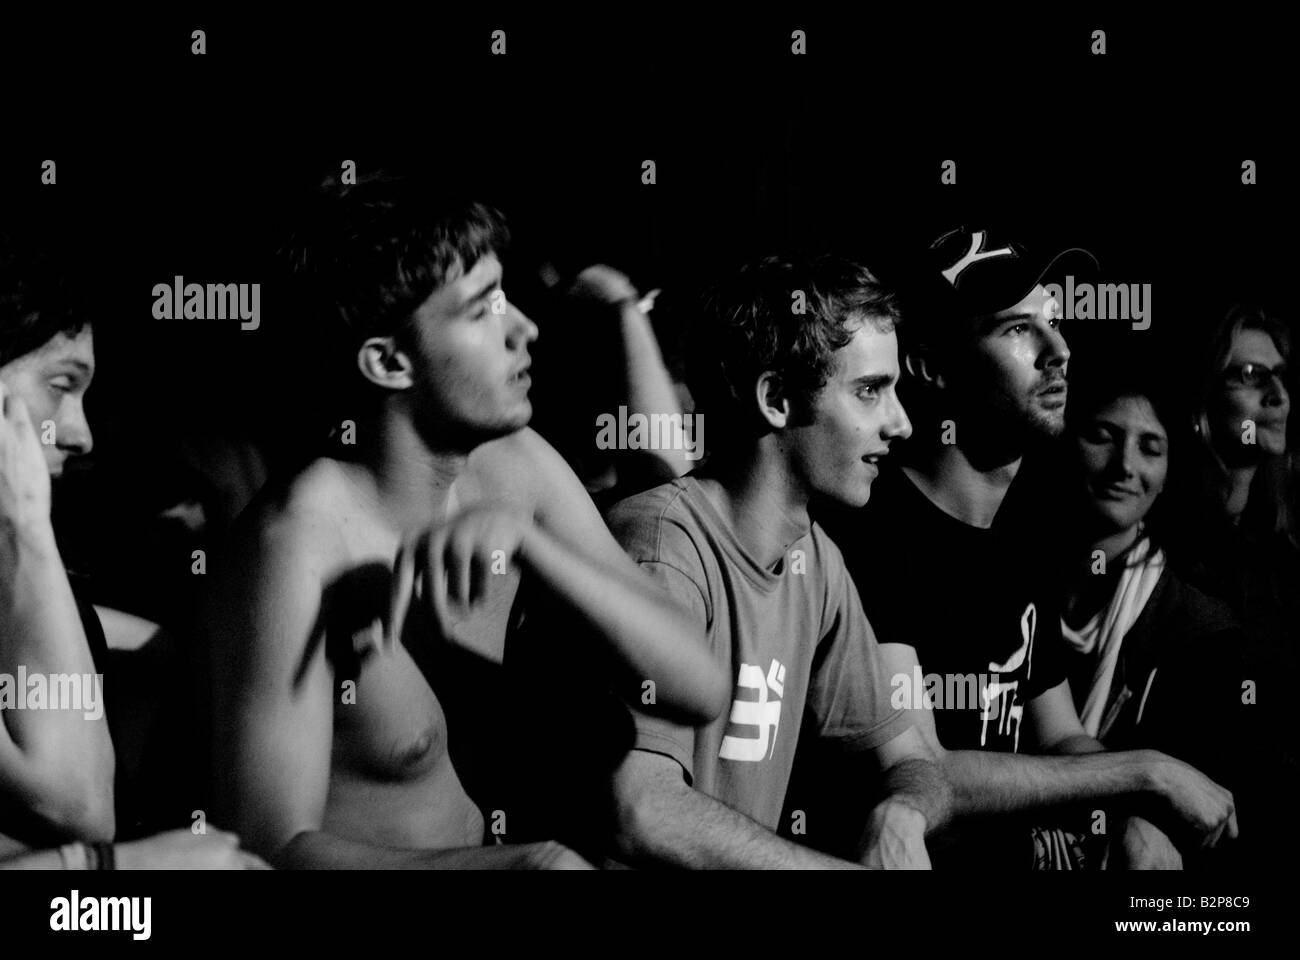 Schwarz / weiß Bild des Jugendlichen Publikums während dj-set beim Musikfestival Stockfoto